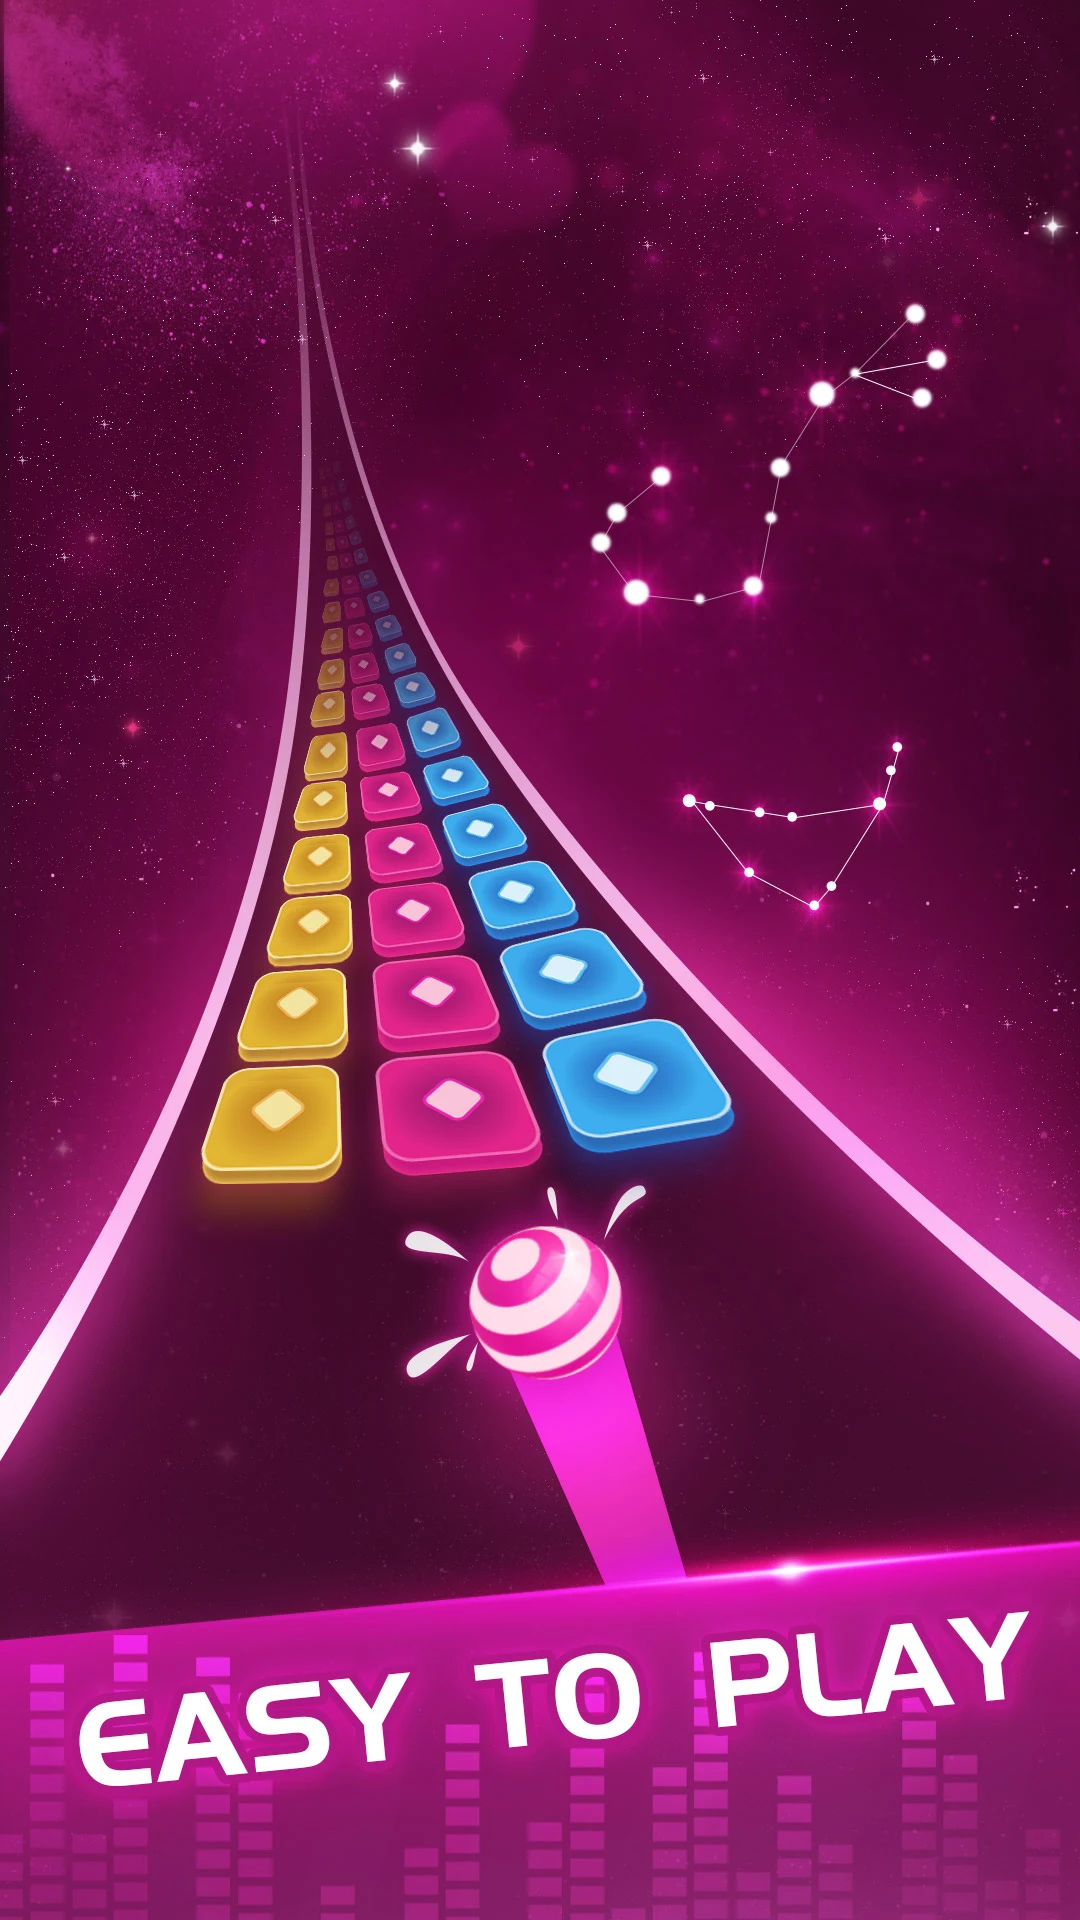 Baixe Color Dance Hop:jogo de musica no PC com MEmu